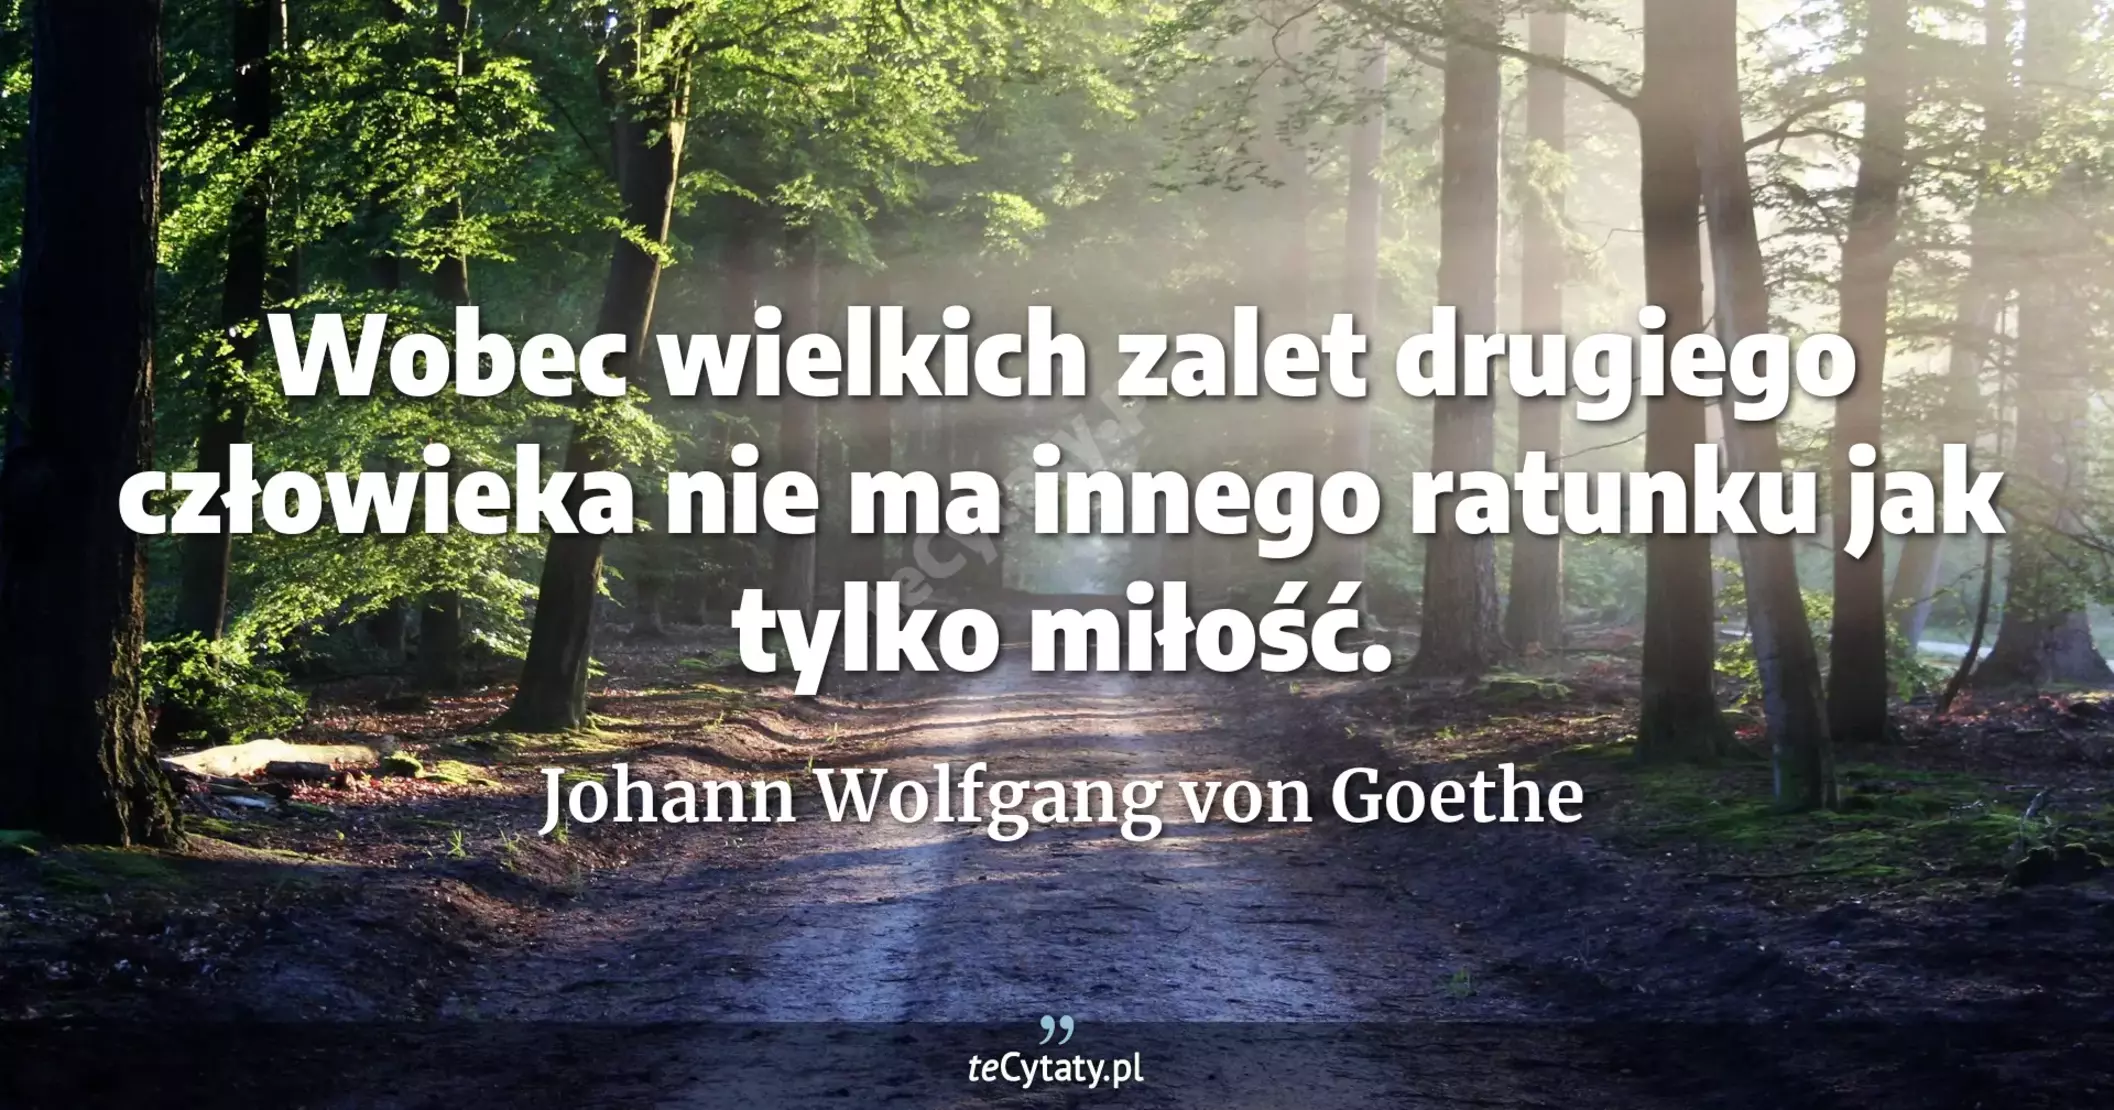 Wobec wielkich zalet drugiego człowieka nie ma innego ratunku jak tylko miłość. - Johann Wolfgang von Goethe